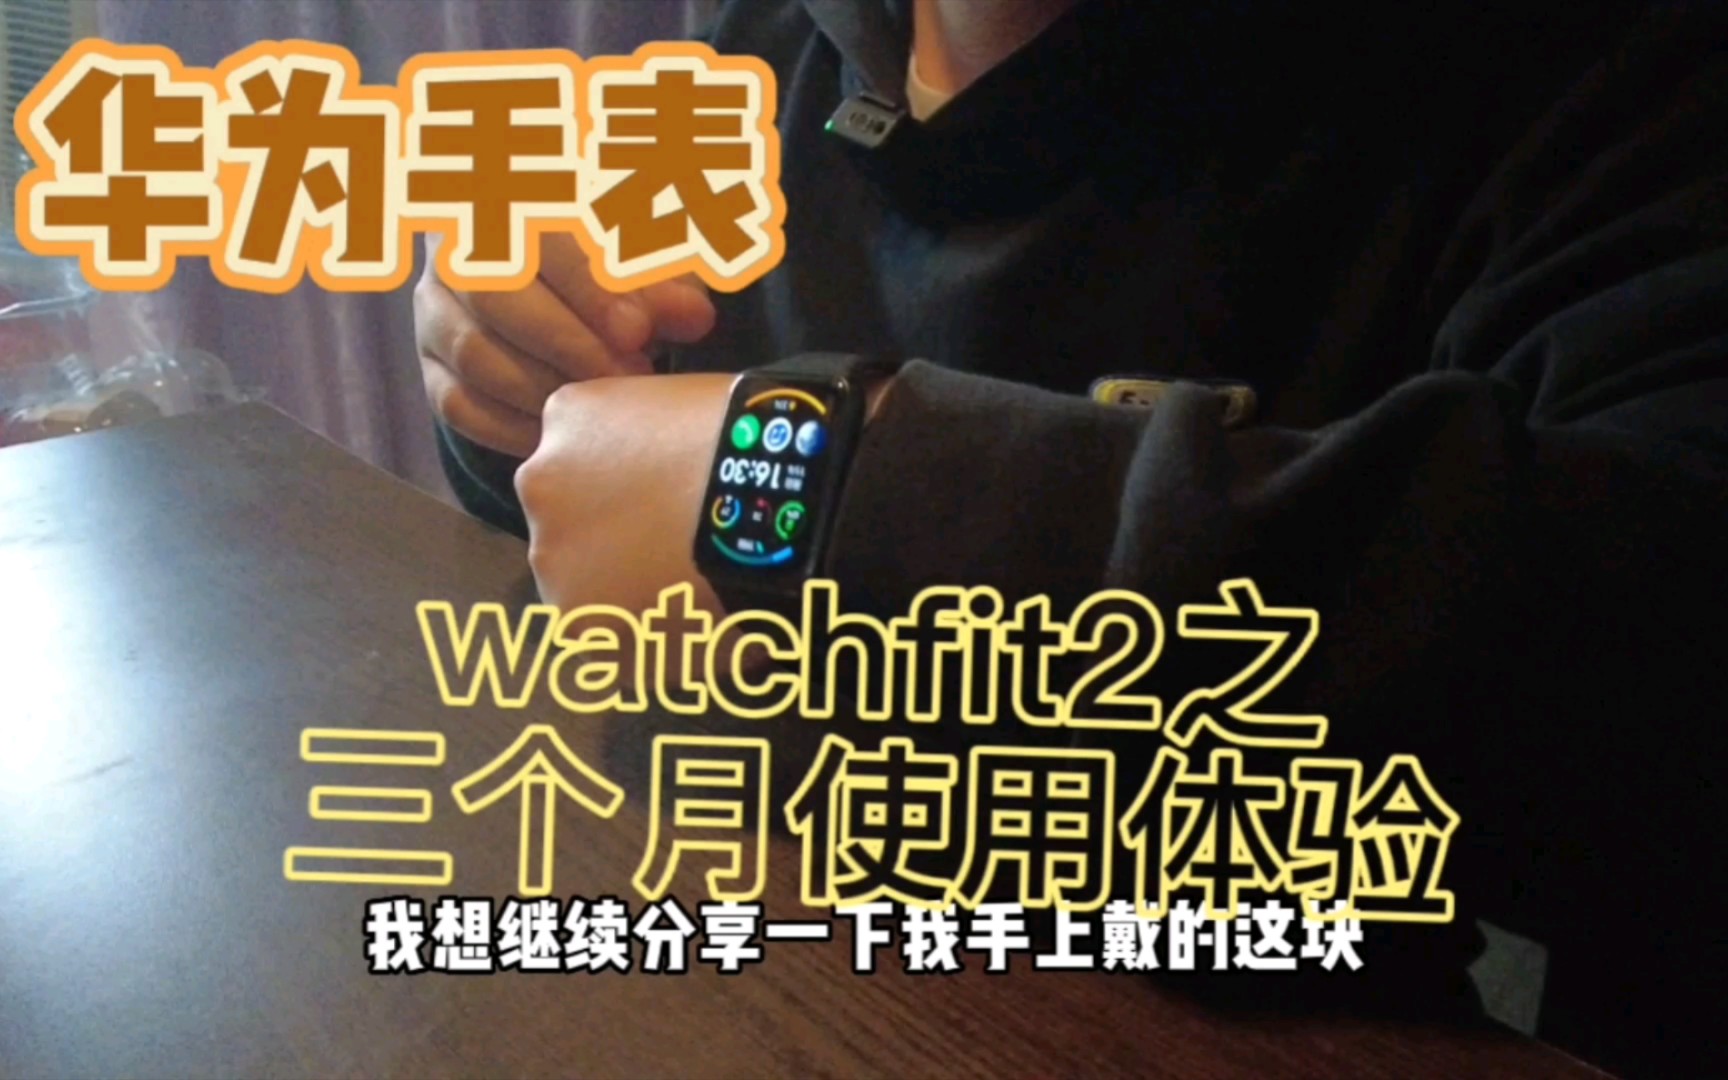 华为运动手表watchfit2三个月真实使用体验，无饭可恰，给你们一个双十一好物分享